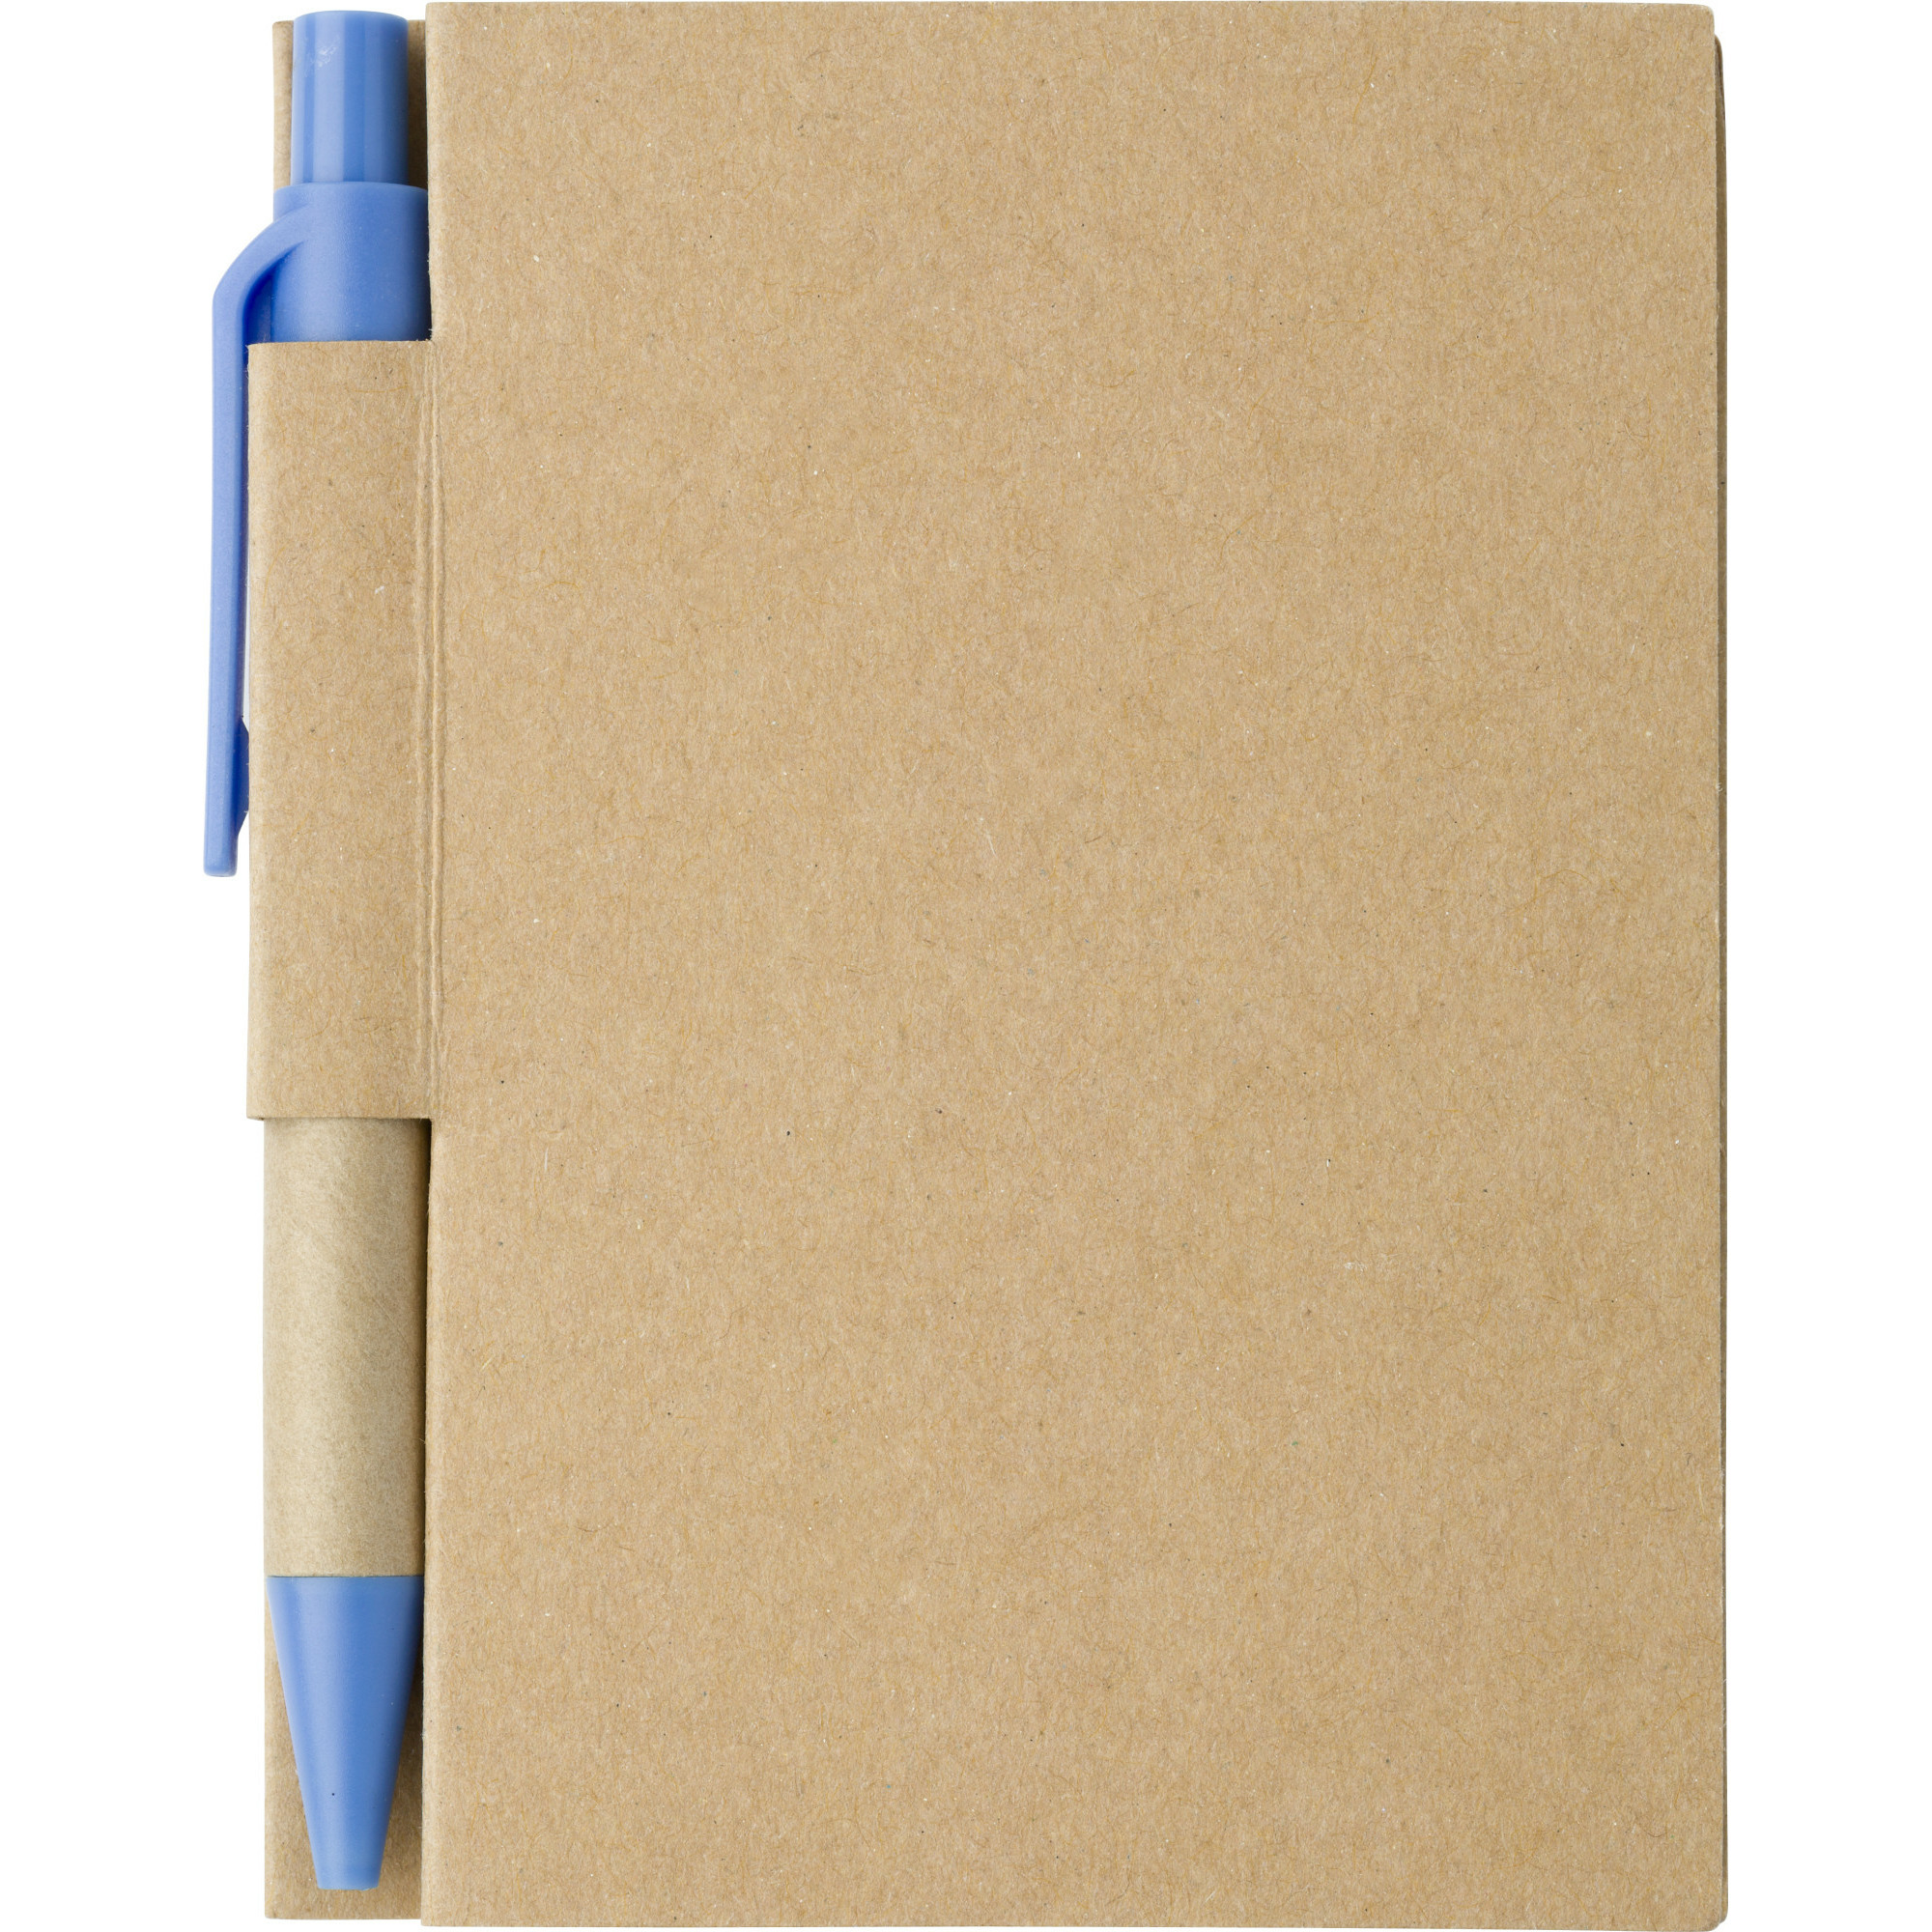 Notitie boekje-blok met balpen harde kaft beige-blauw 11 x 8 cm 80 bladzijden gelinieerd